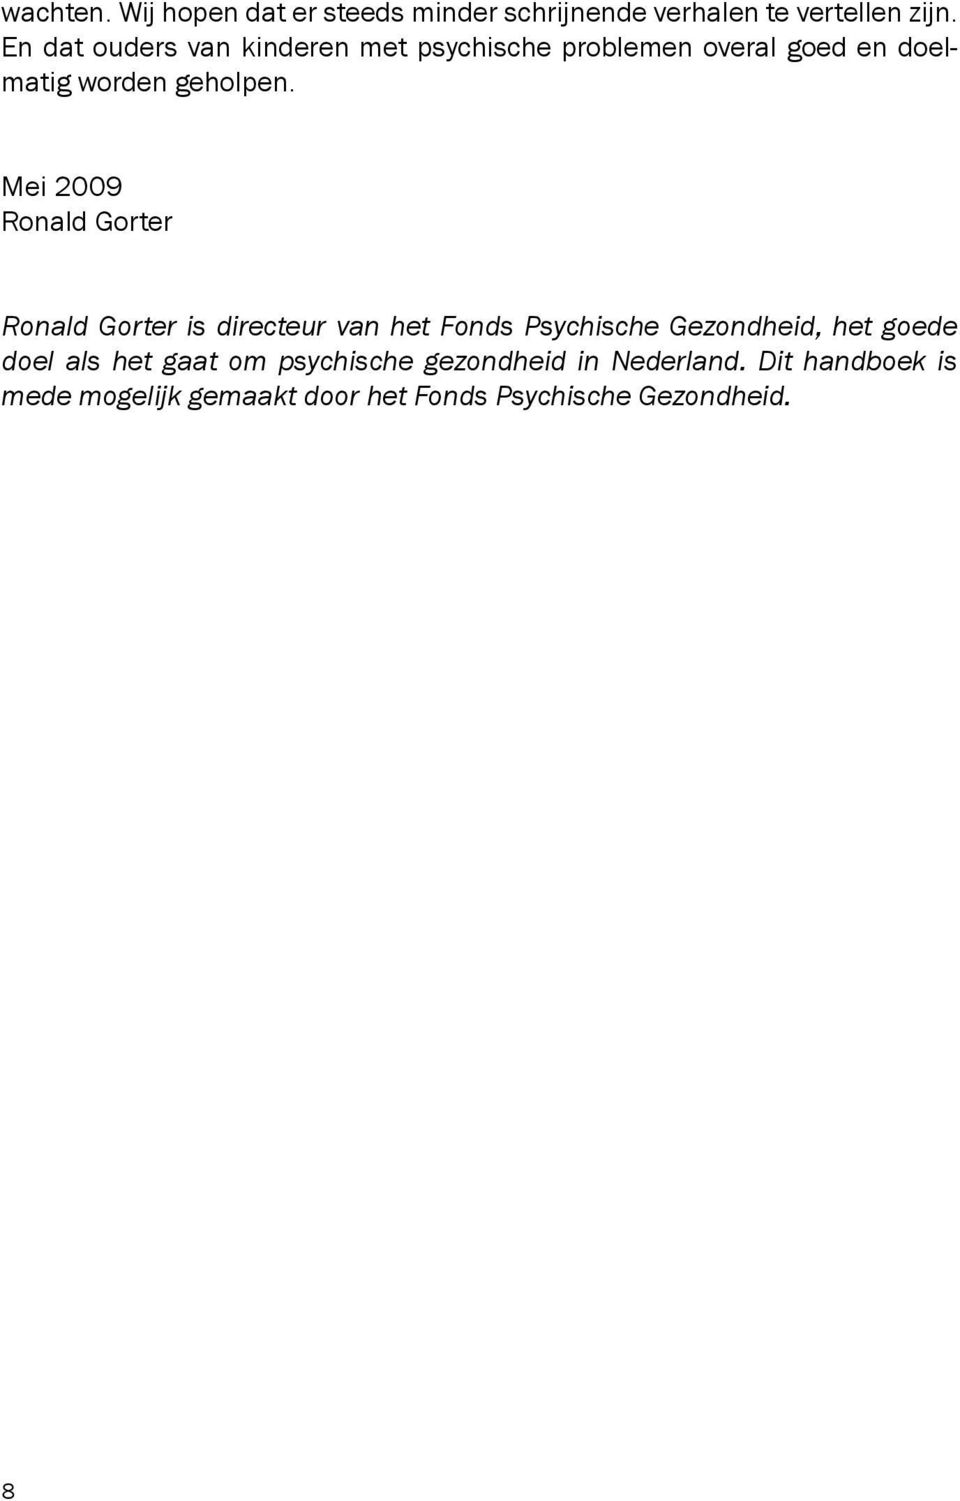 Mei 2009 Ronald Gorter Ronald Gorter is directeur van het Fonds Psychische